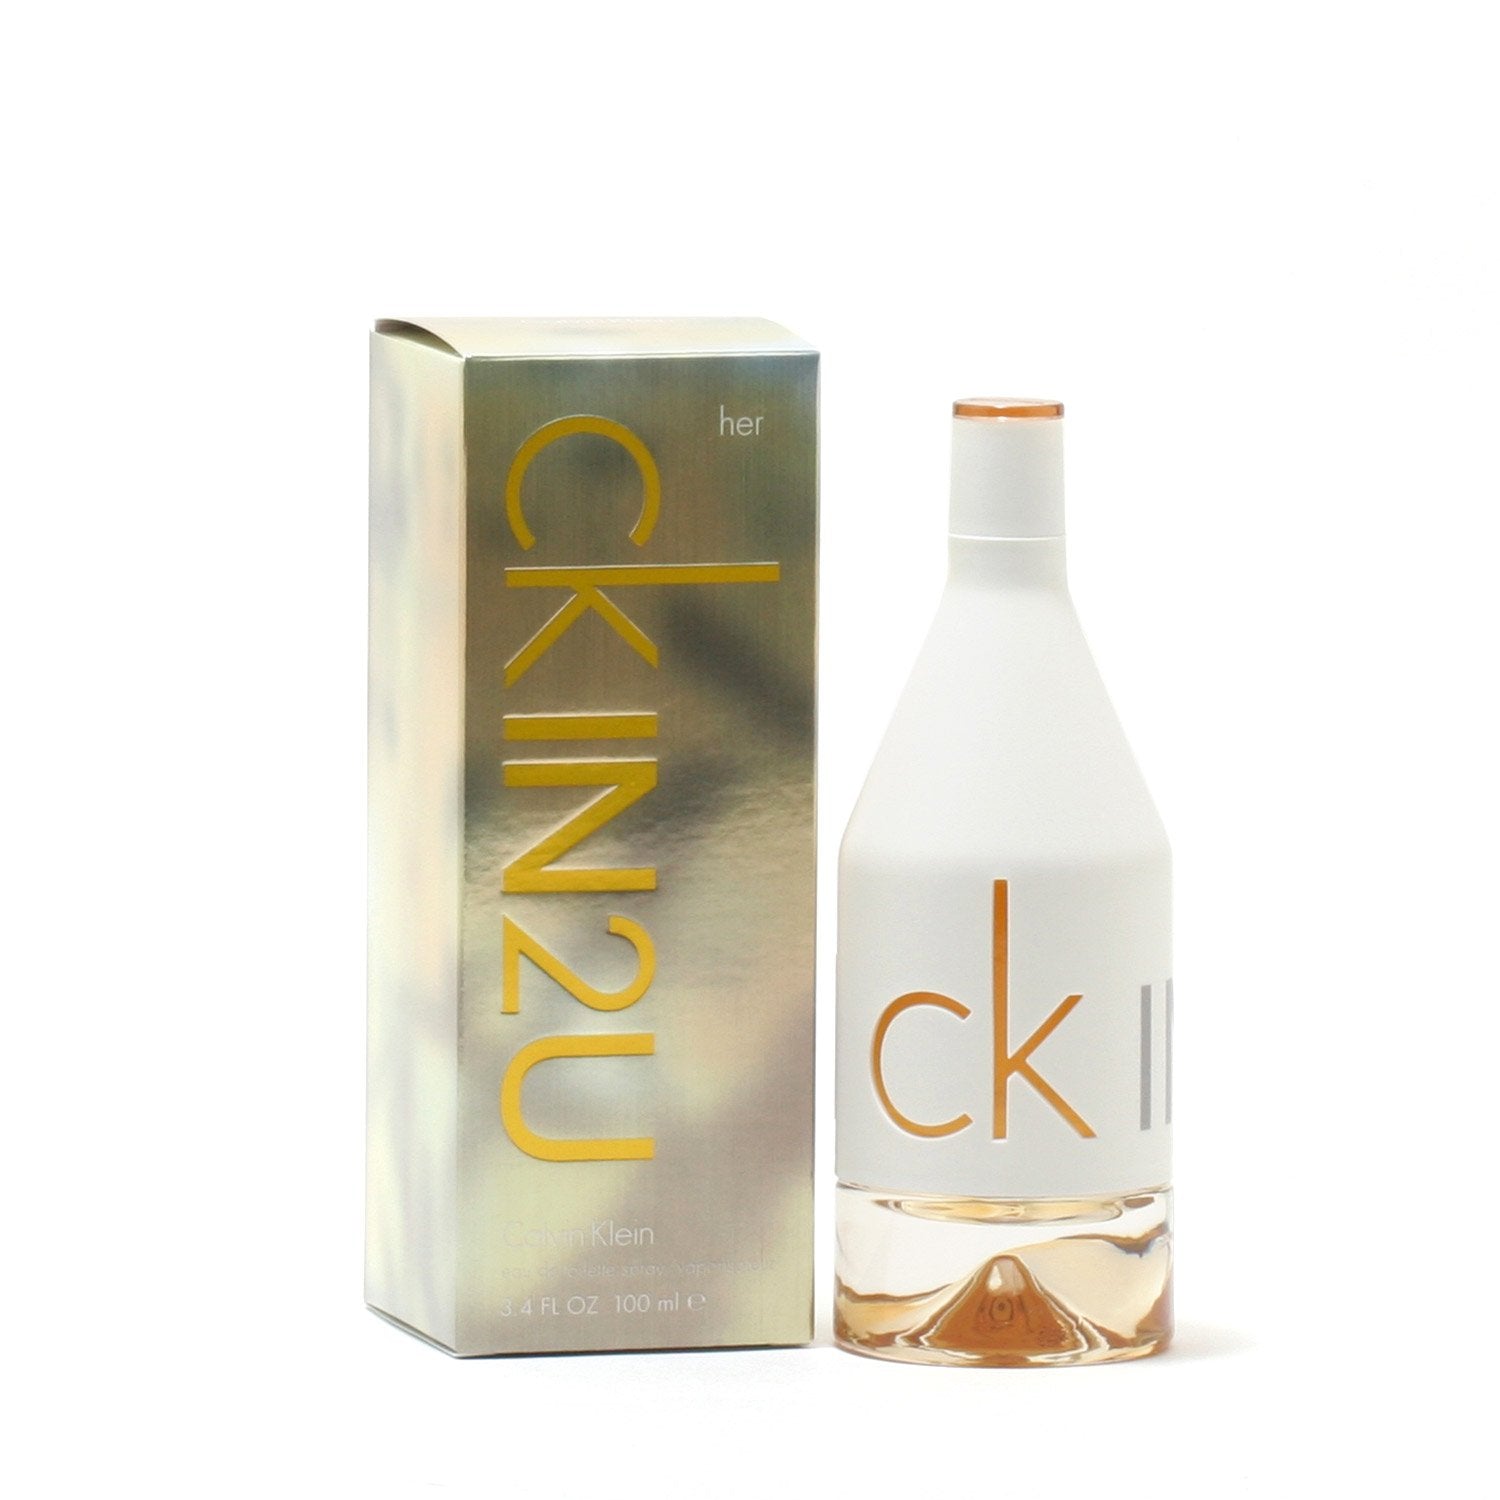 CK Be by Calvin Klein 100ml EDT Spray